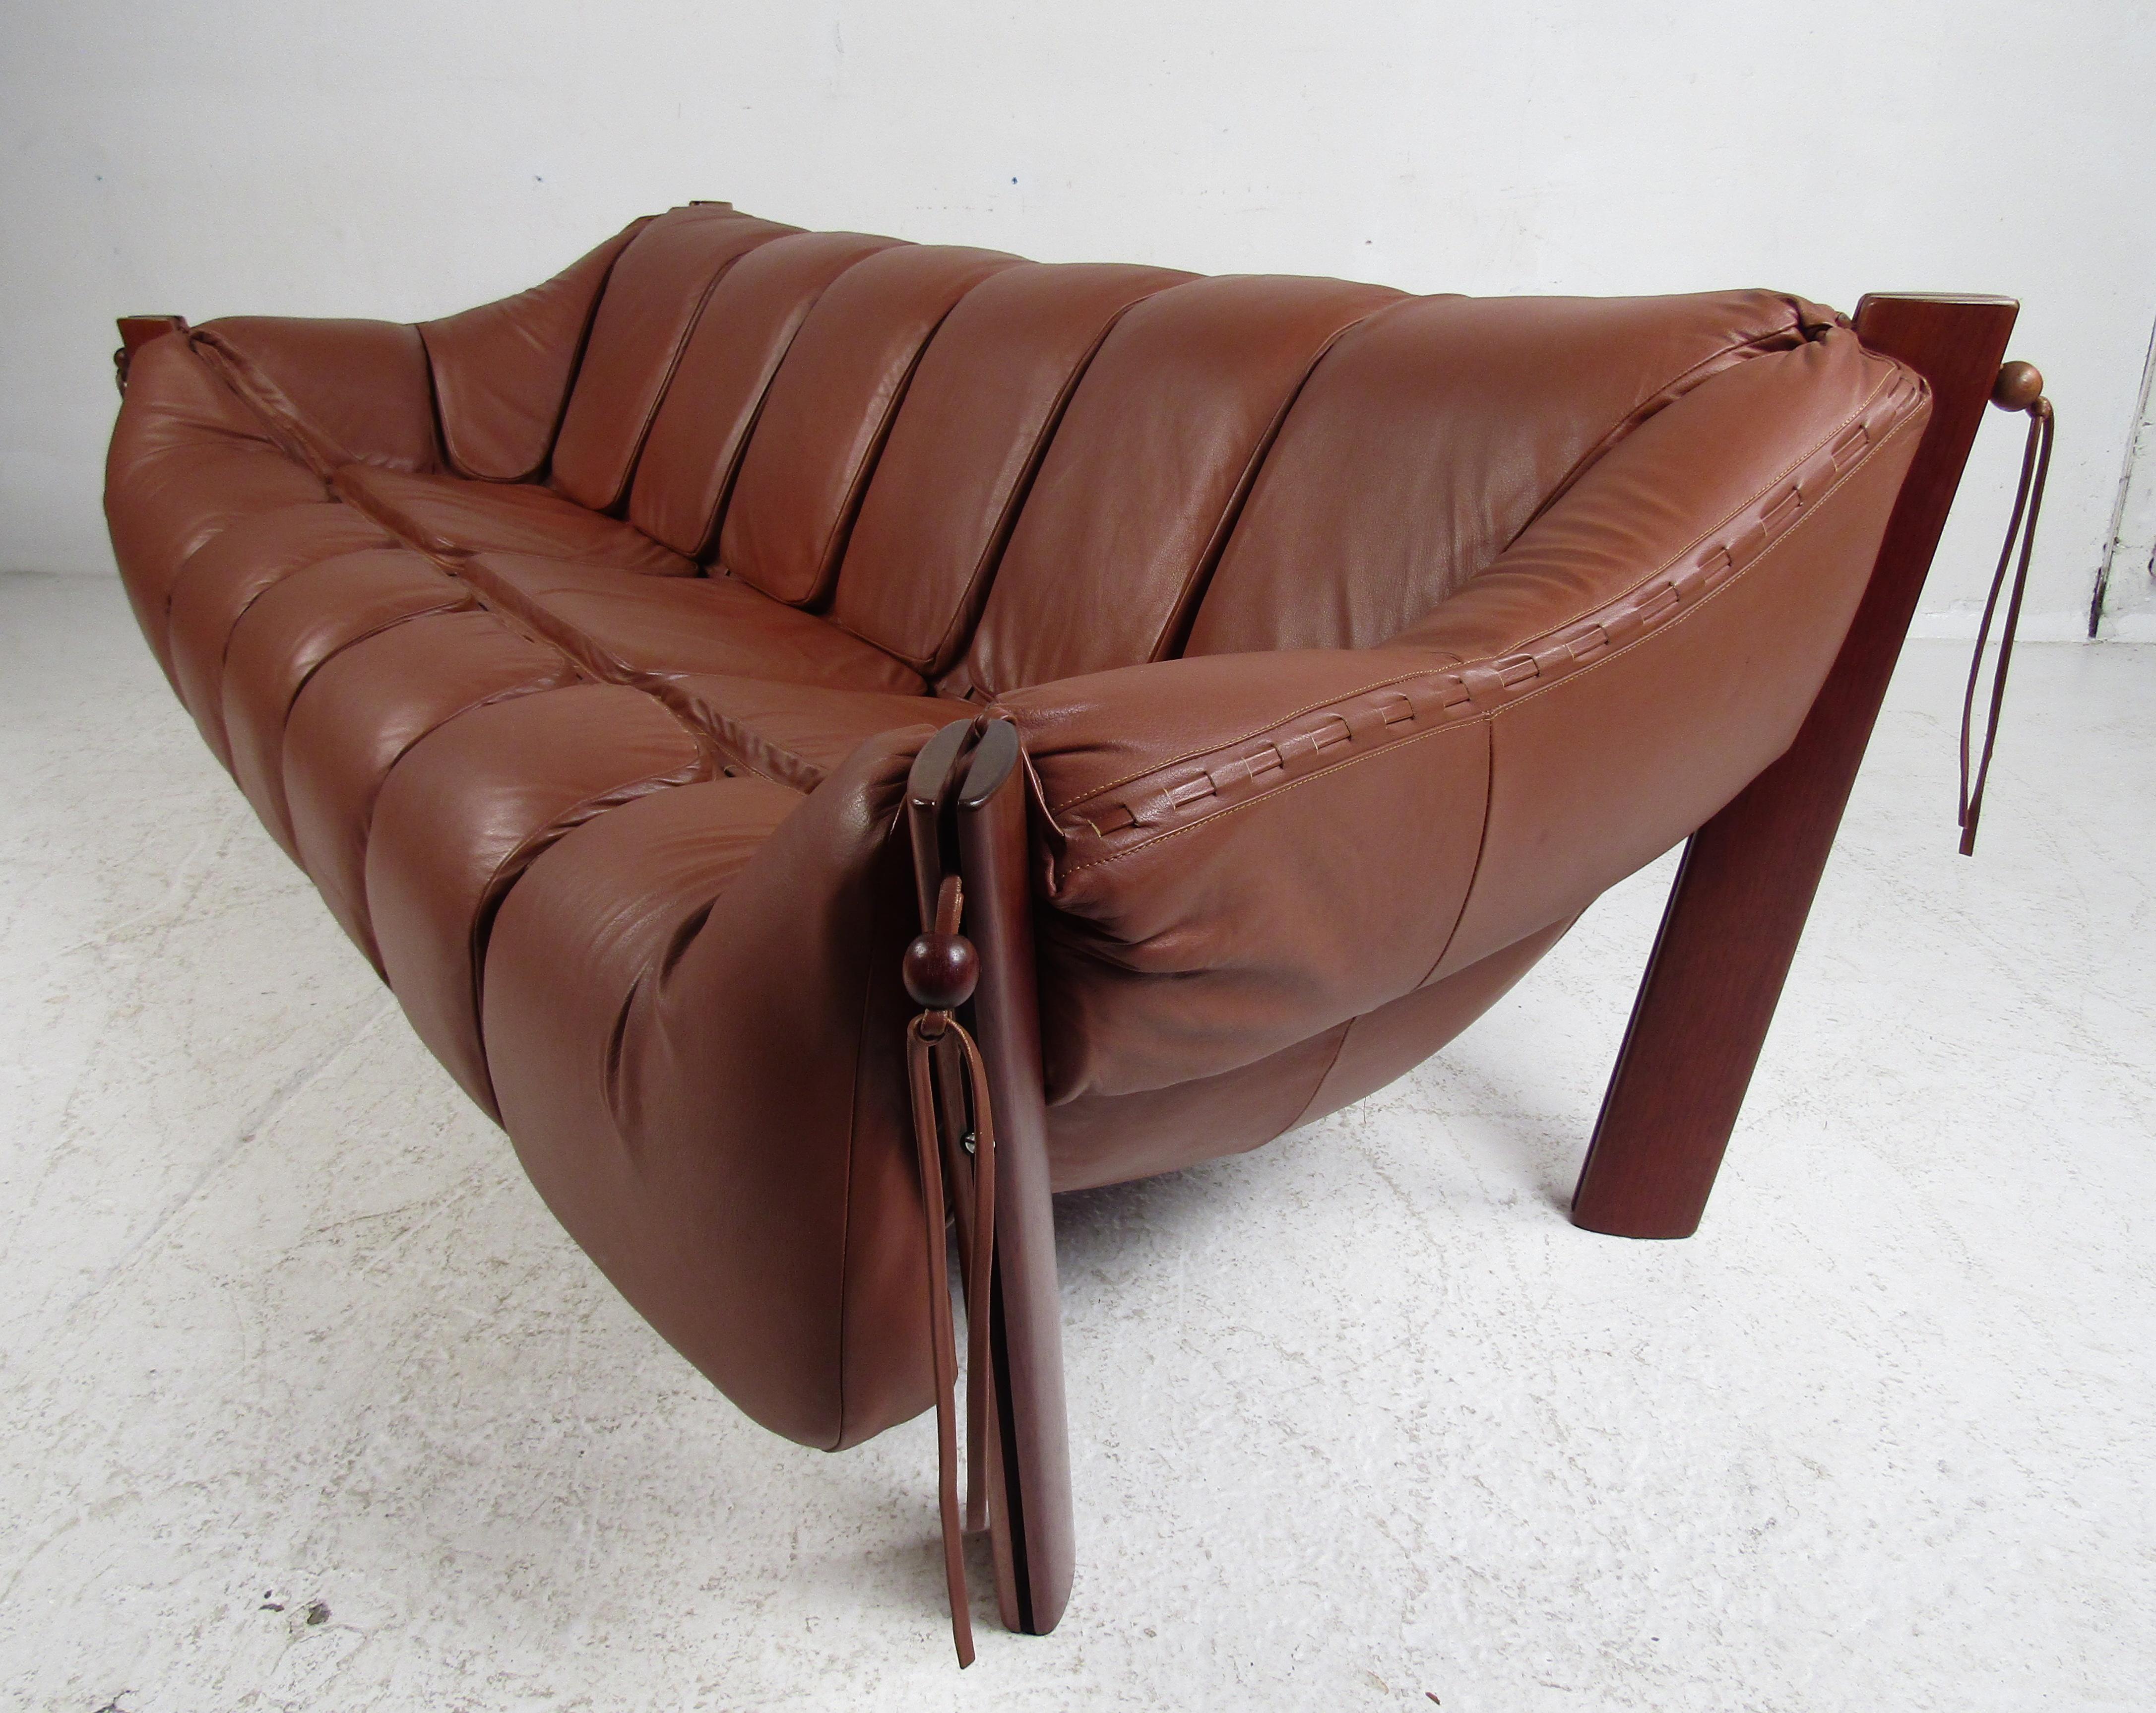 Dieses beeindruckende brasilianische Vintage-Wohnzimmer-Set besteht aus zwei Sesseln mit Ottomane und einem Sofa. Das gepolsterte Dreisitzer-Sofa und die Loungesessel sind mit Lederschnüren verziert:: die mit einer einzigartigen Perle aus Rosenholz